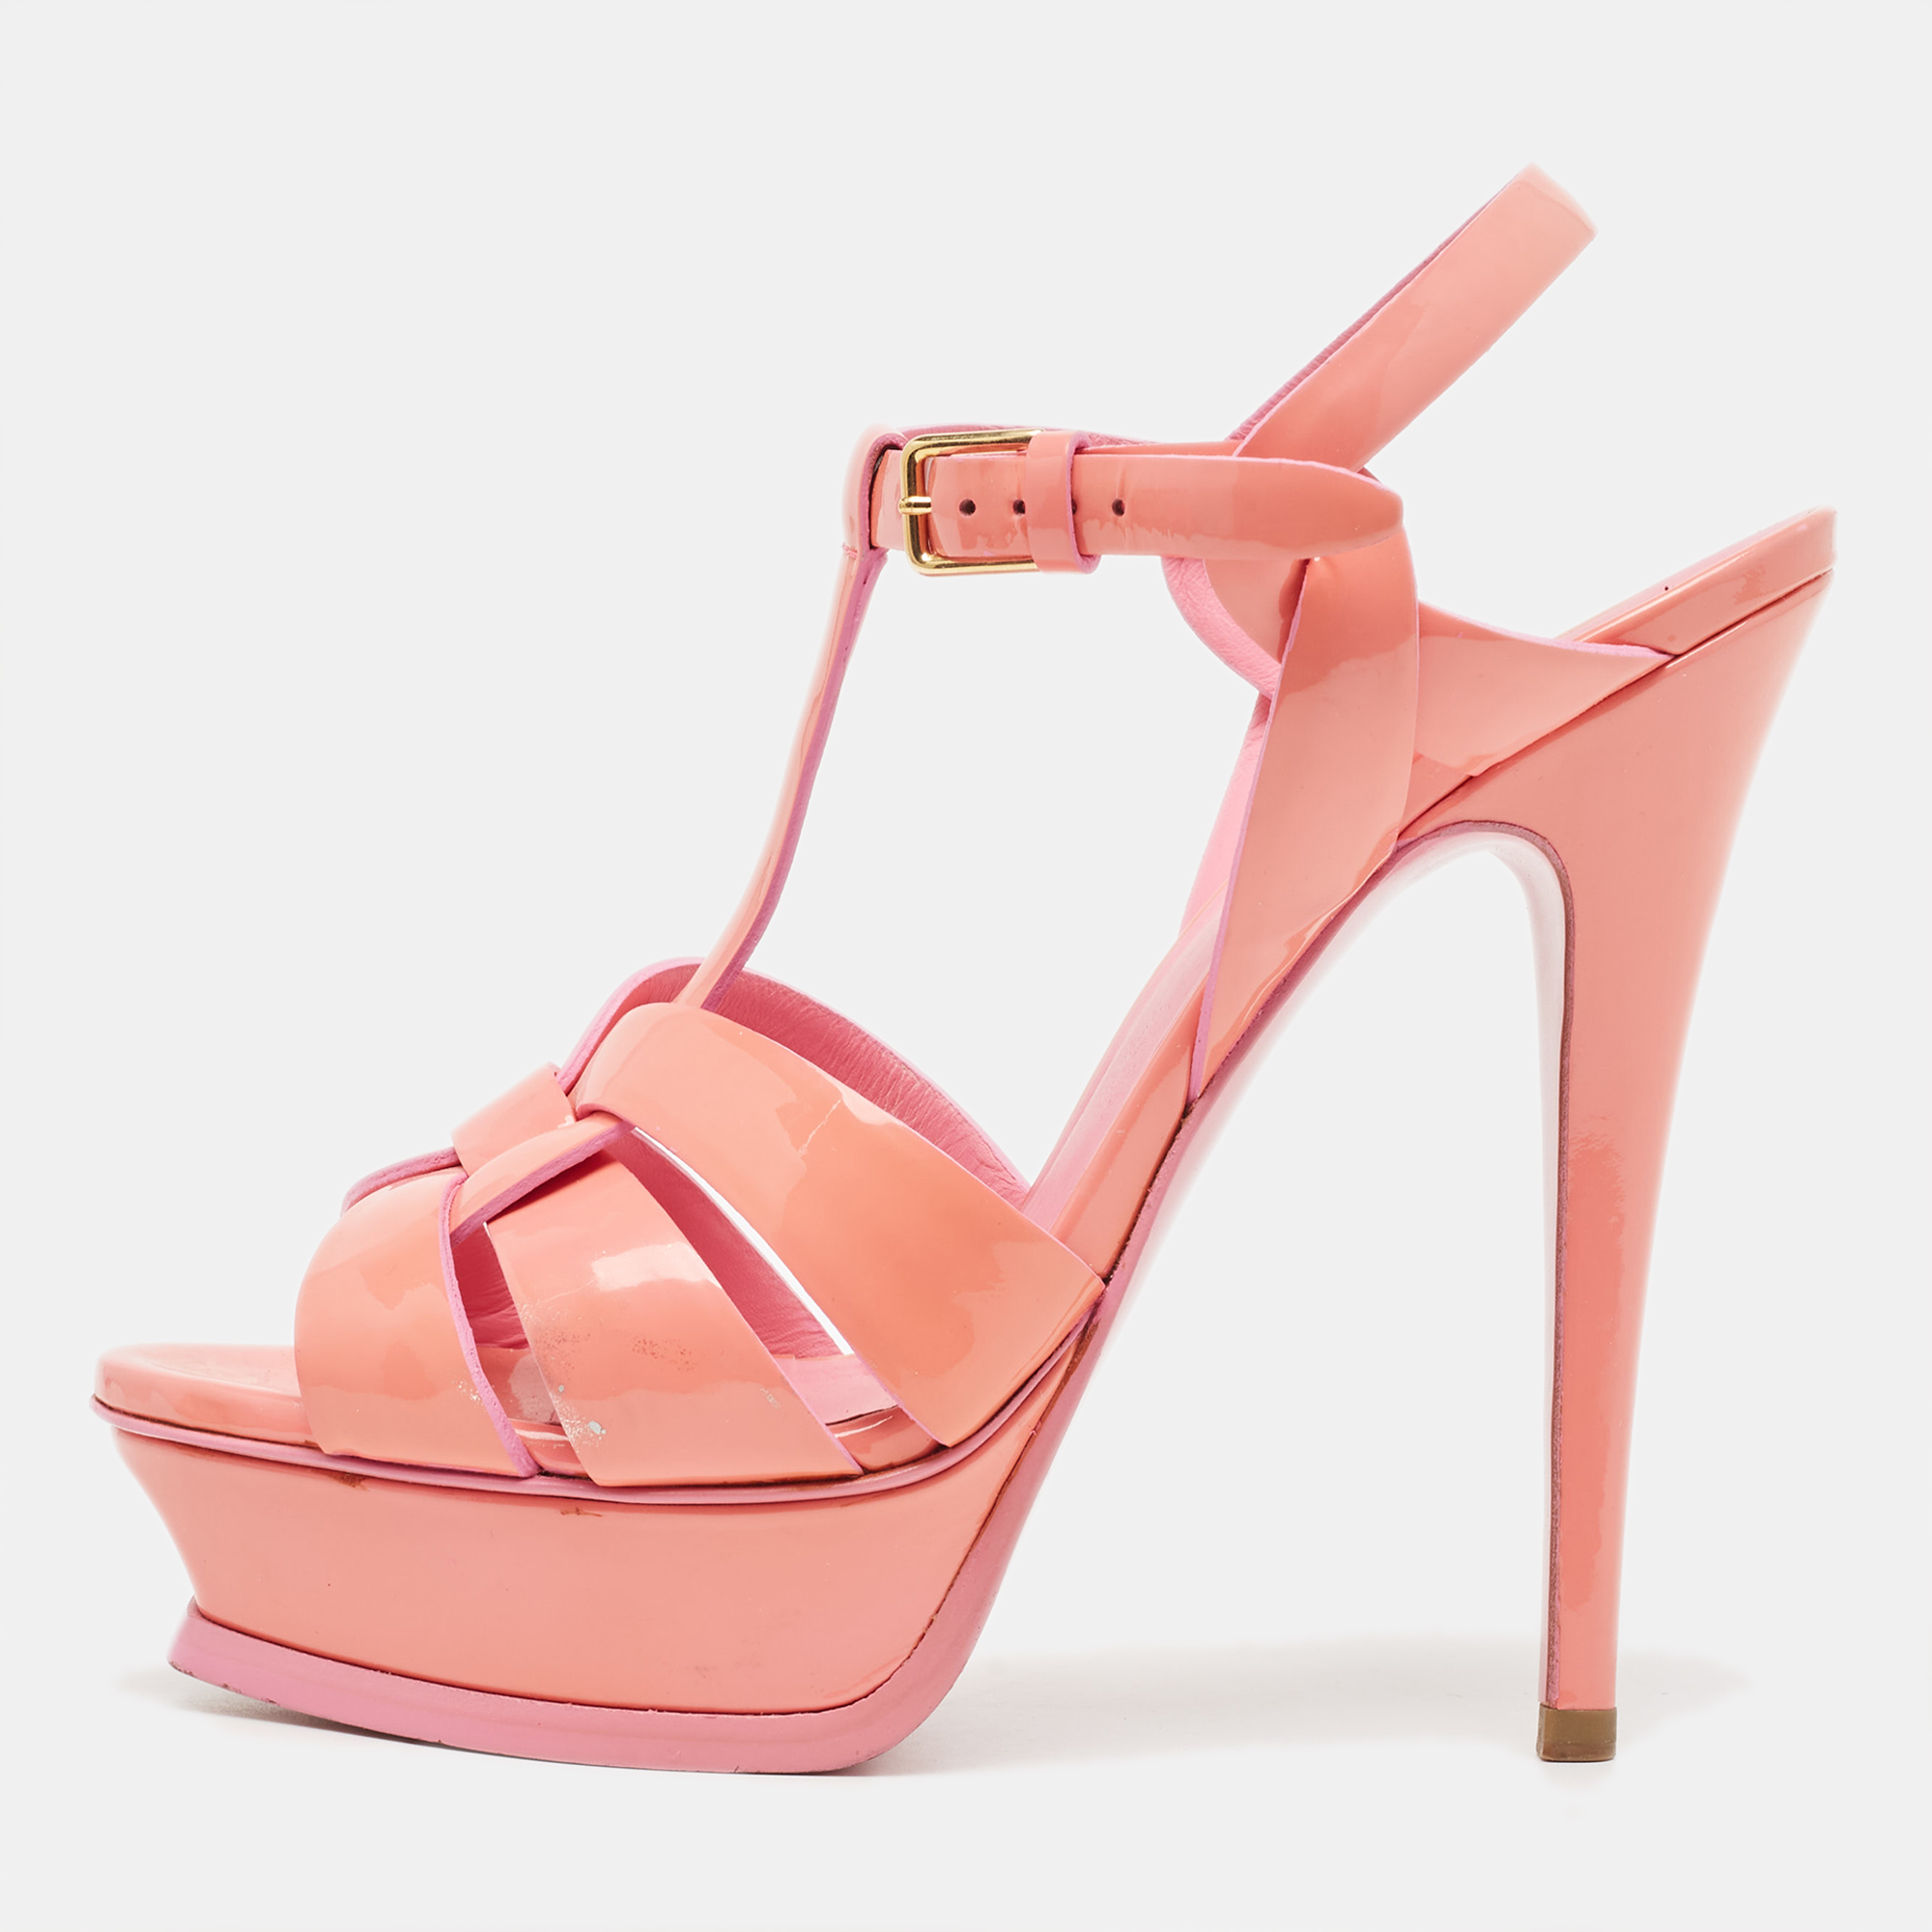 Yves saint laurent pink  patent tribute sandals size 37